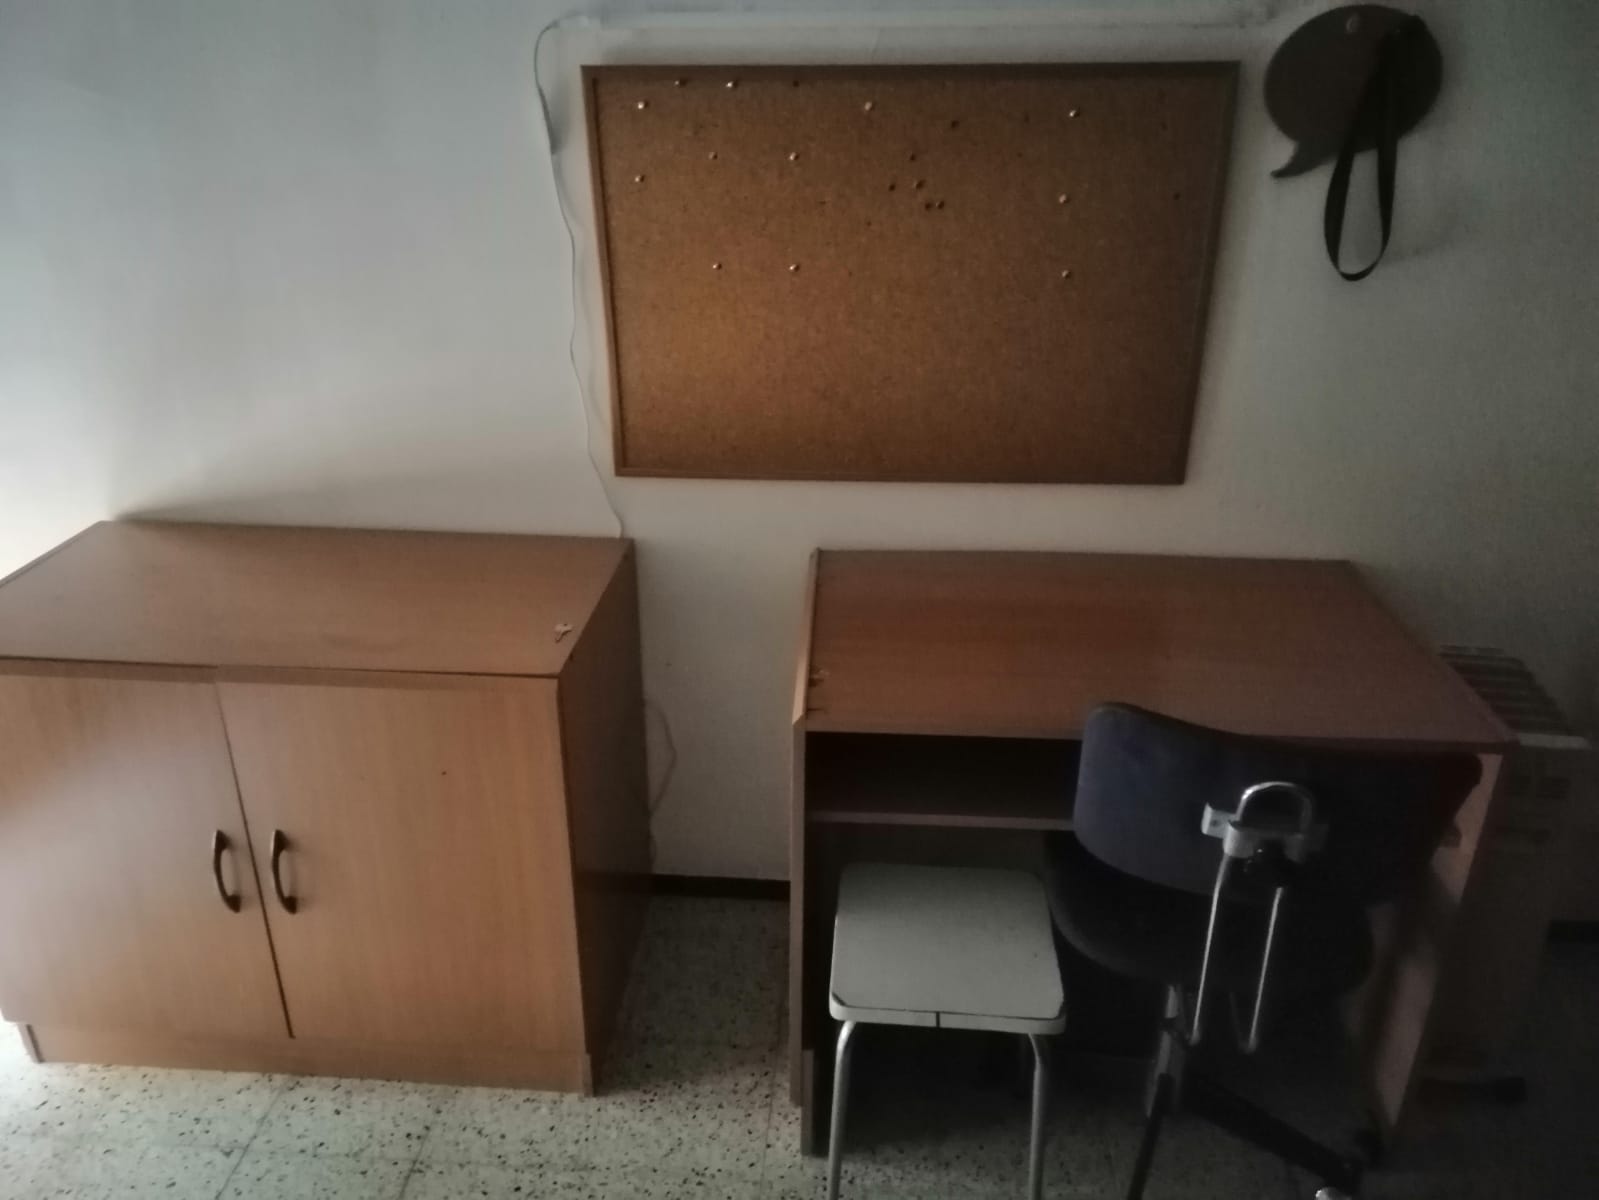 Servicio de vaciado de pisos de muebles viejos en Sant Joan de Vilatorrada